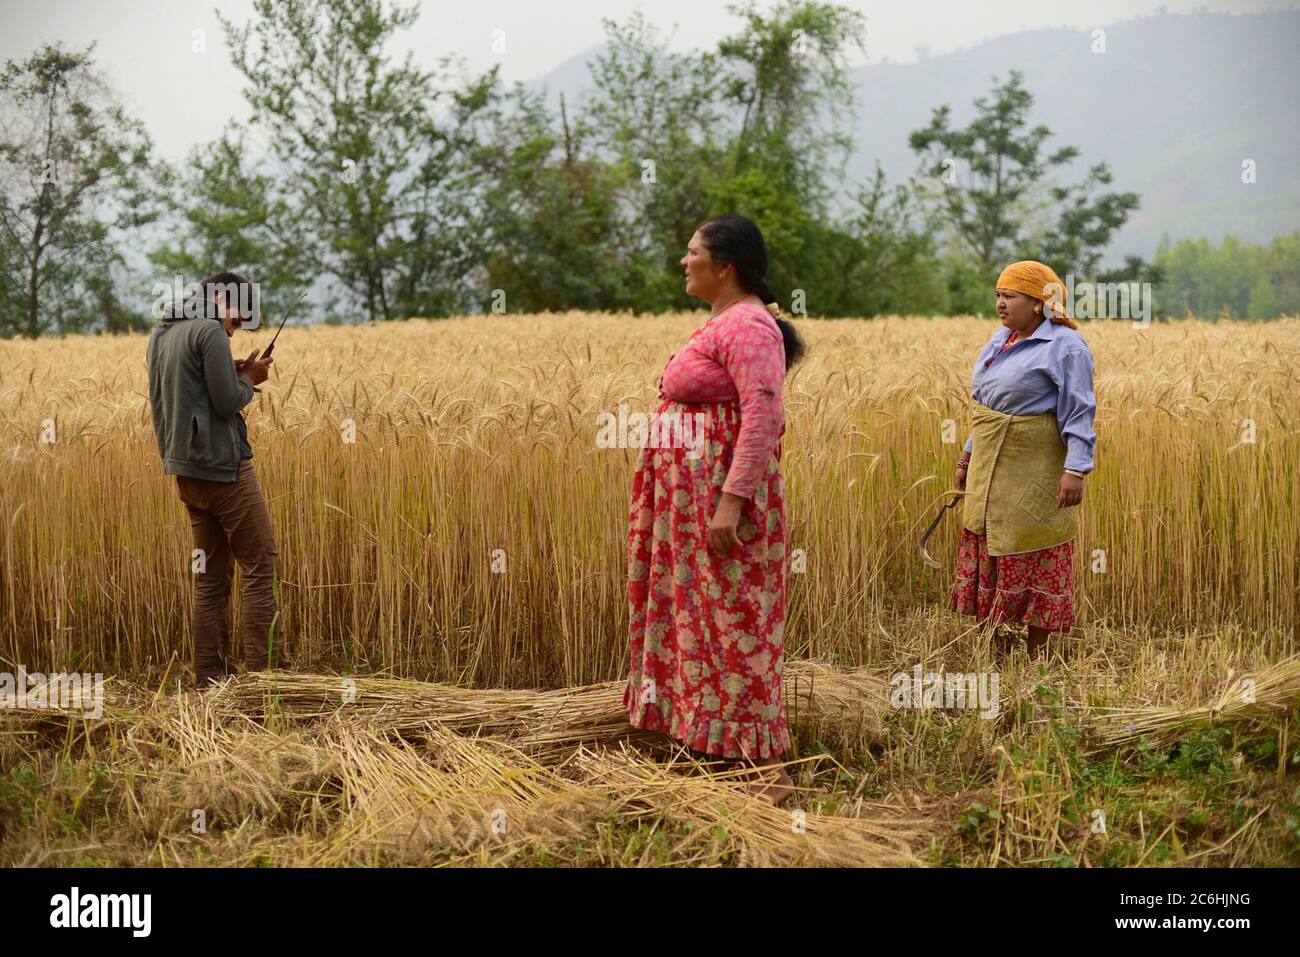 Les agriculteurs récoltent du blé dans un champ agricole du district de Kavrepalanchok, au Népal. Banque D'Images